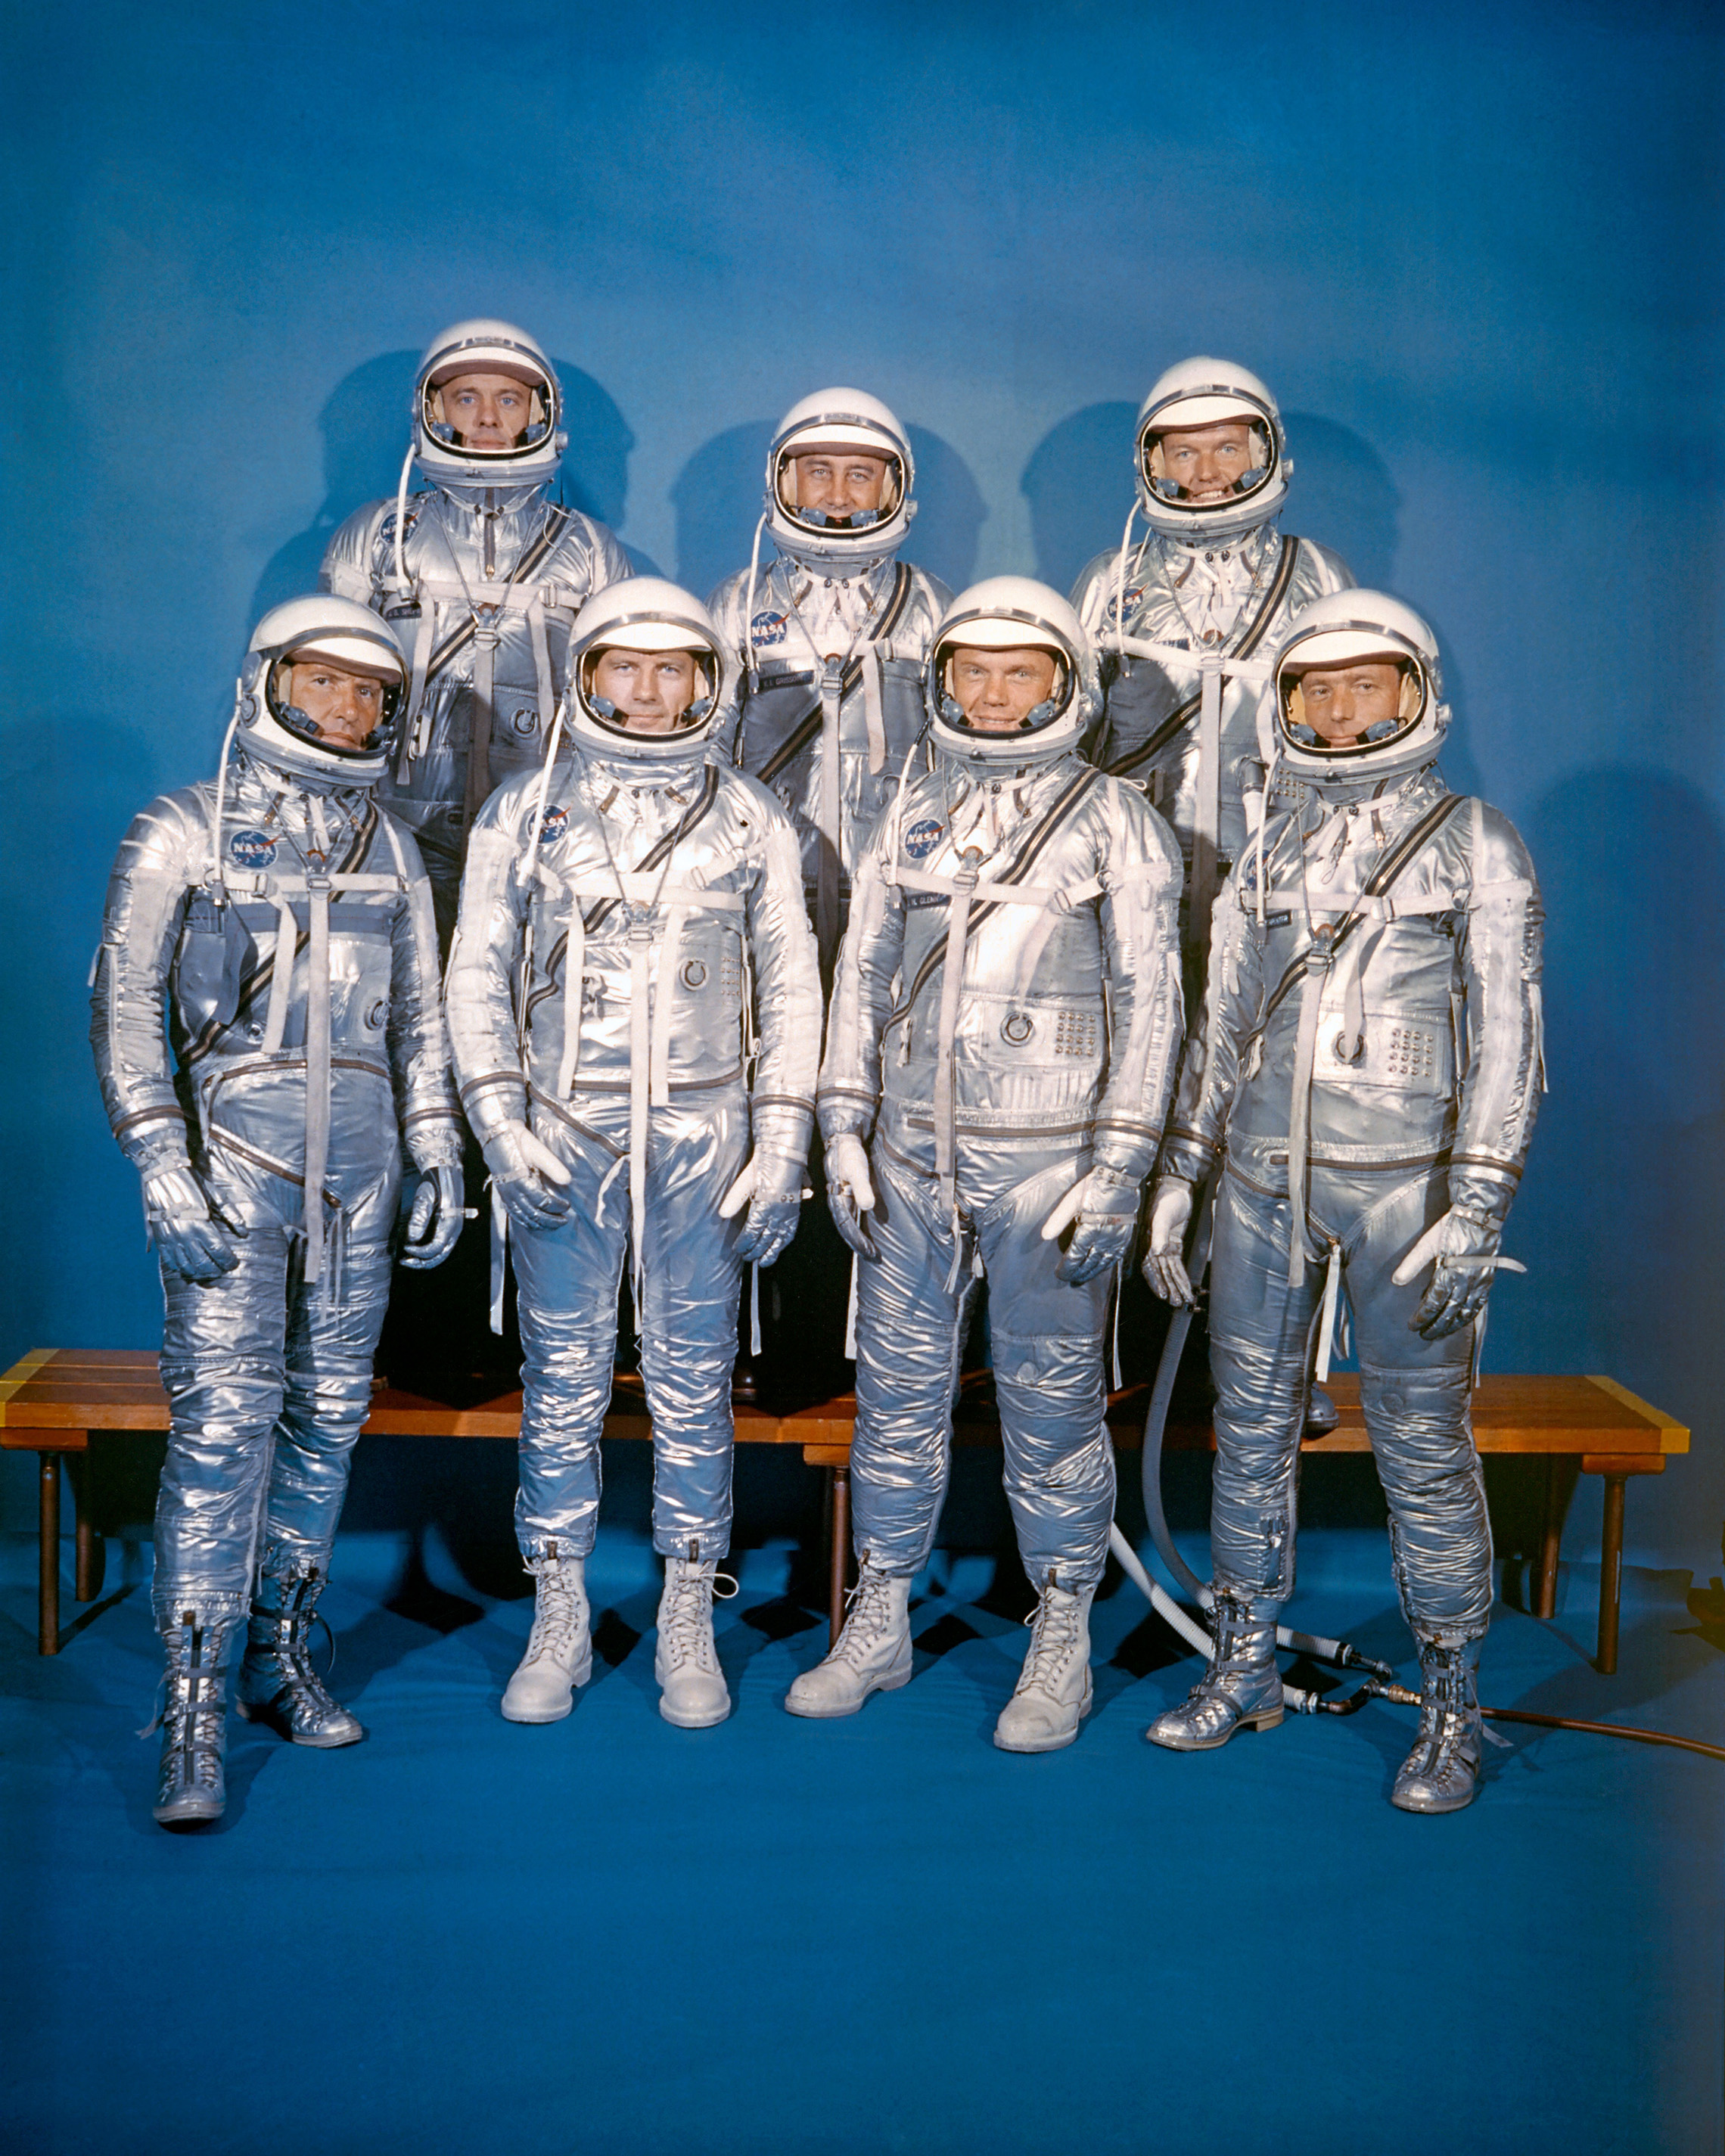 1959年4月9日、NASAは最初の宇宙飛行士クラスであるMercury7を導入しました。 前列、左から右へ：ウォルター-M-シーラ-ジュニア、ドナルド-K-"ディーク"-スレイトン、ジョン-H-グレン-ジュニア、M-スコット-カーペンター、後列、アラン-B-シェパード-ジュニア、ヴァージル-I-"ガス"-グリソム、L-ゴードン-クーパー-ジュニア（NASA）"Deke" Slayton, John H. Glenn, Jr., and M. Scott Carpenter; back row, Alan B. Shepard, Jr., Virgil I. "Gus" Grissom, and L. Gordon Cooper, Jr. (NASA)